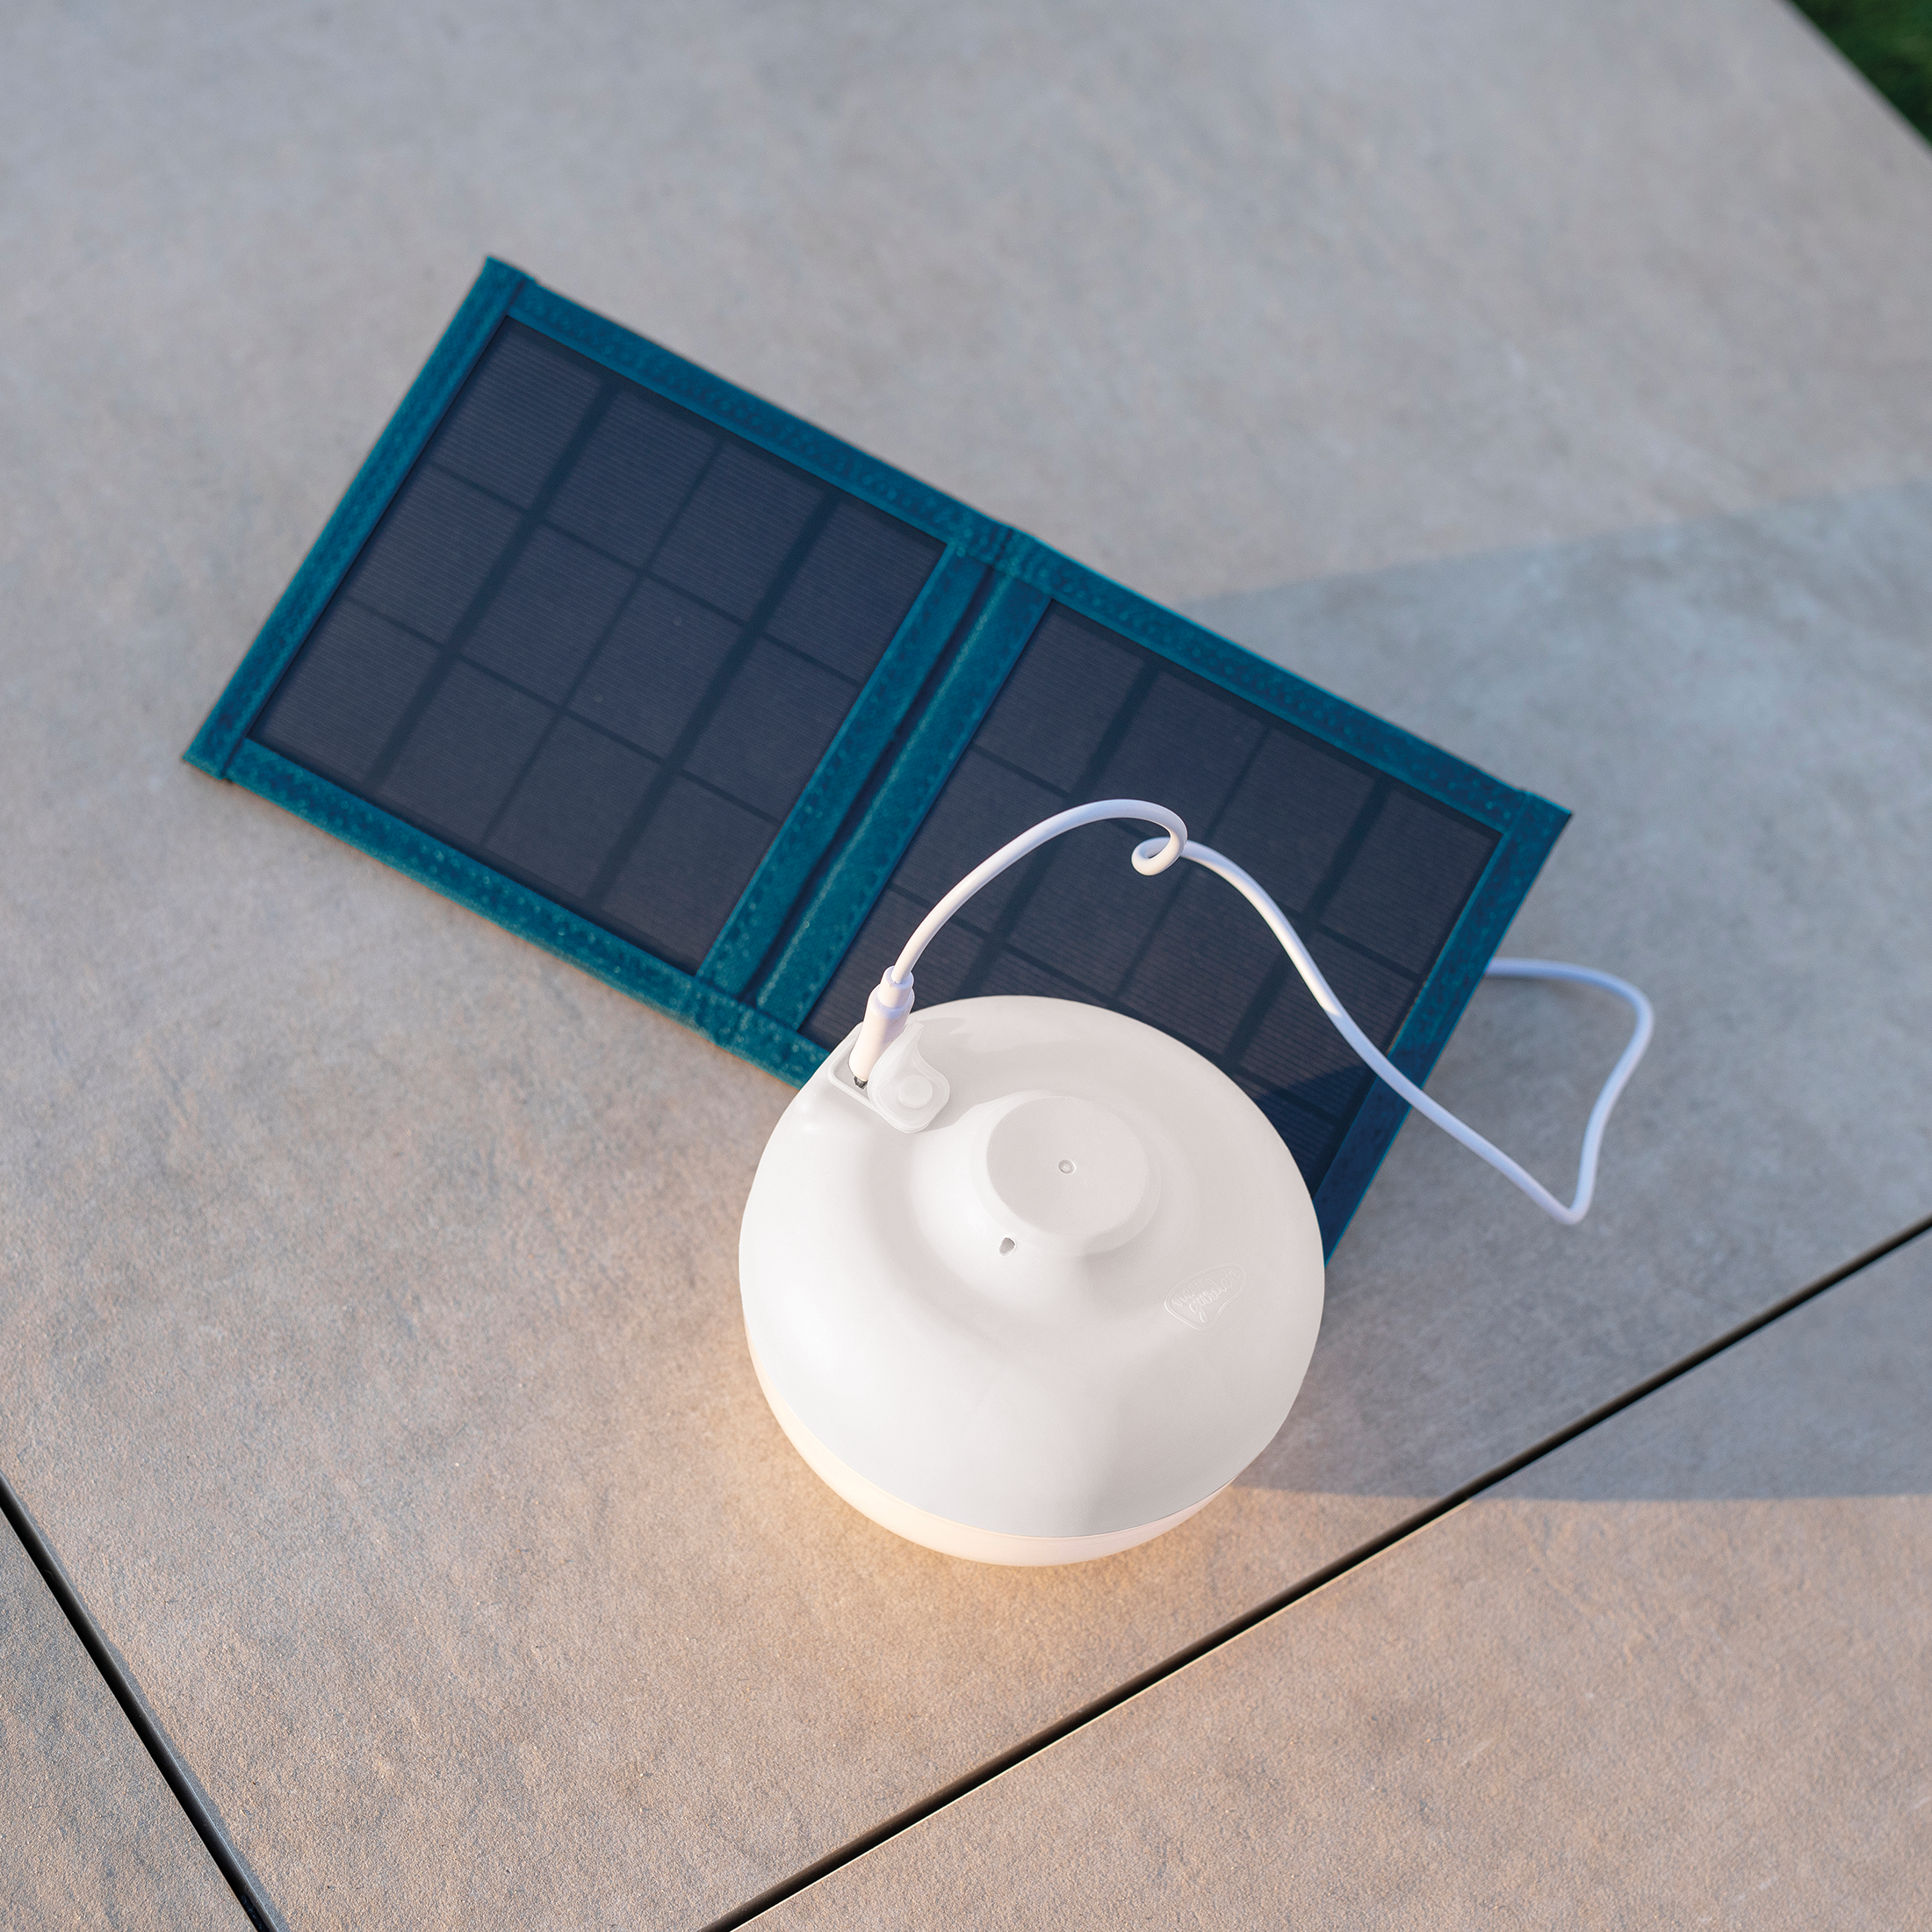 Acheter Ampoule solaire Rechargeable, lampe de nuit avec télécommande,  Portable, pour l'extérieur, batterie intégrée, lumière de Camping